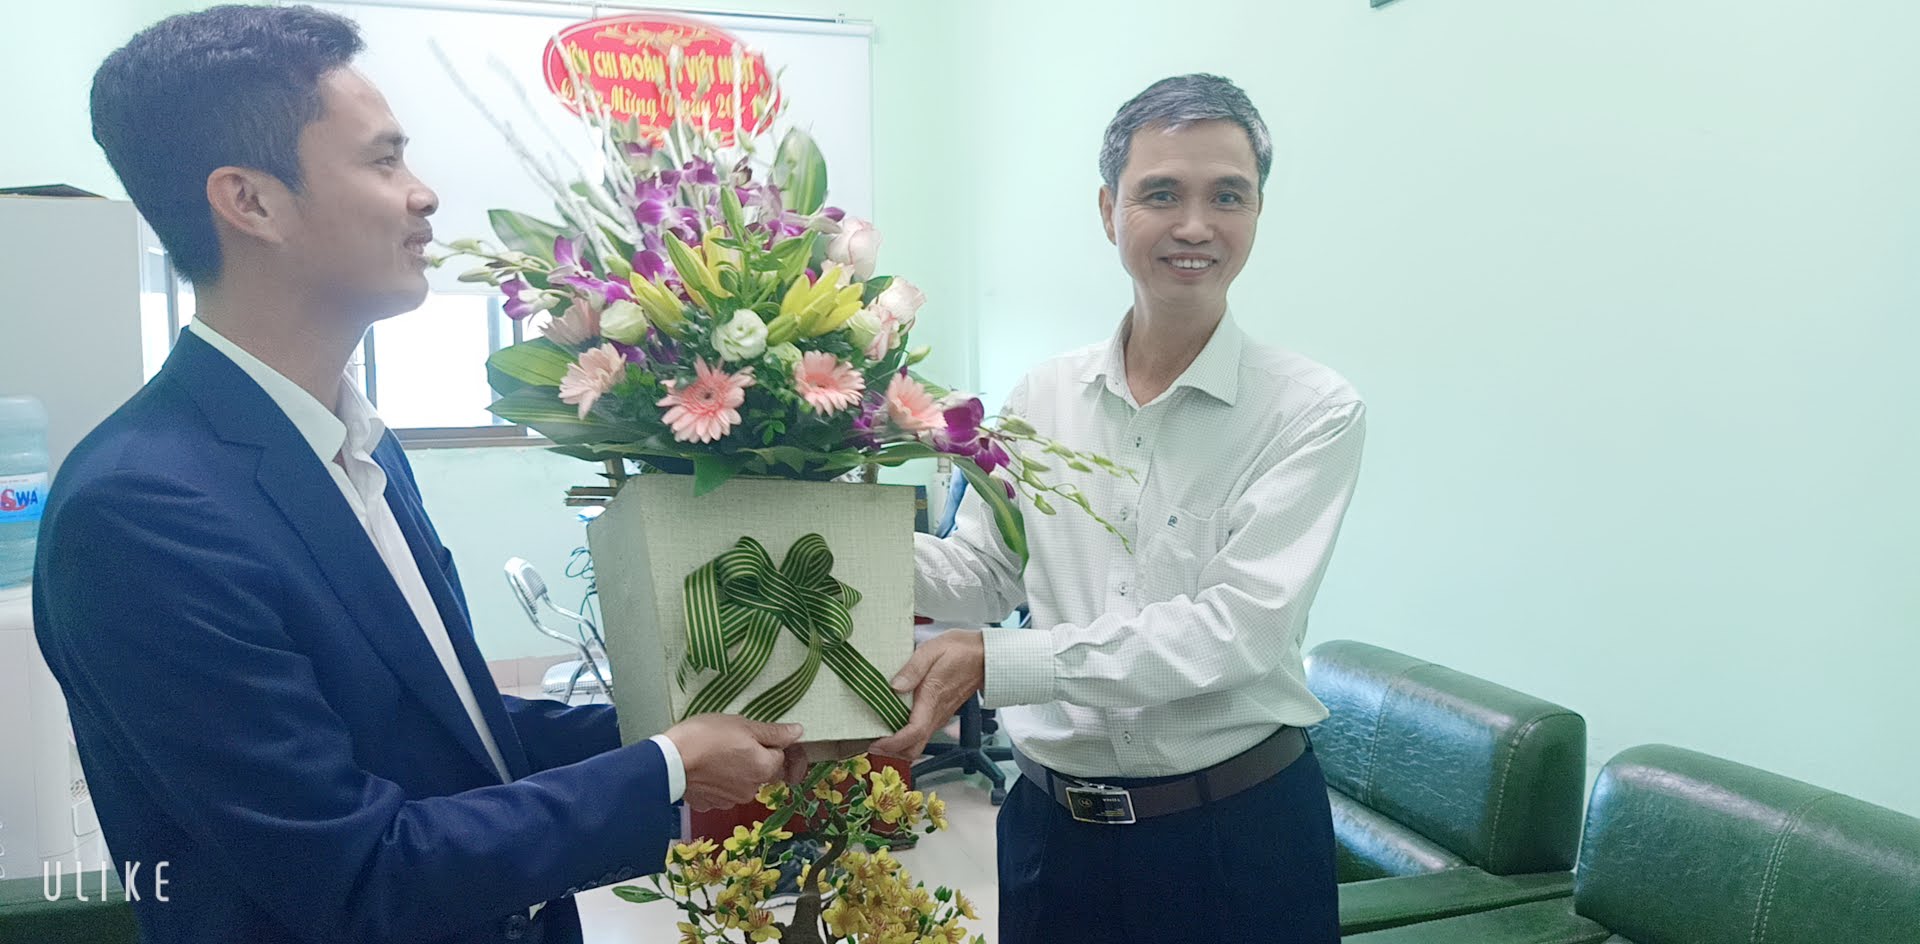 Ngày hội tri ân các thầy cô của sinh viên Trung tâm Việt Nhật